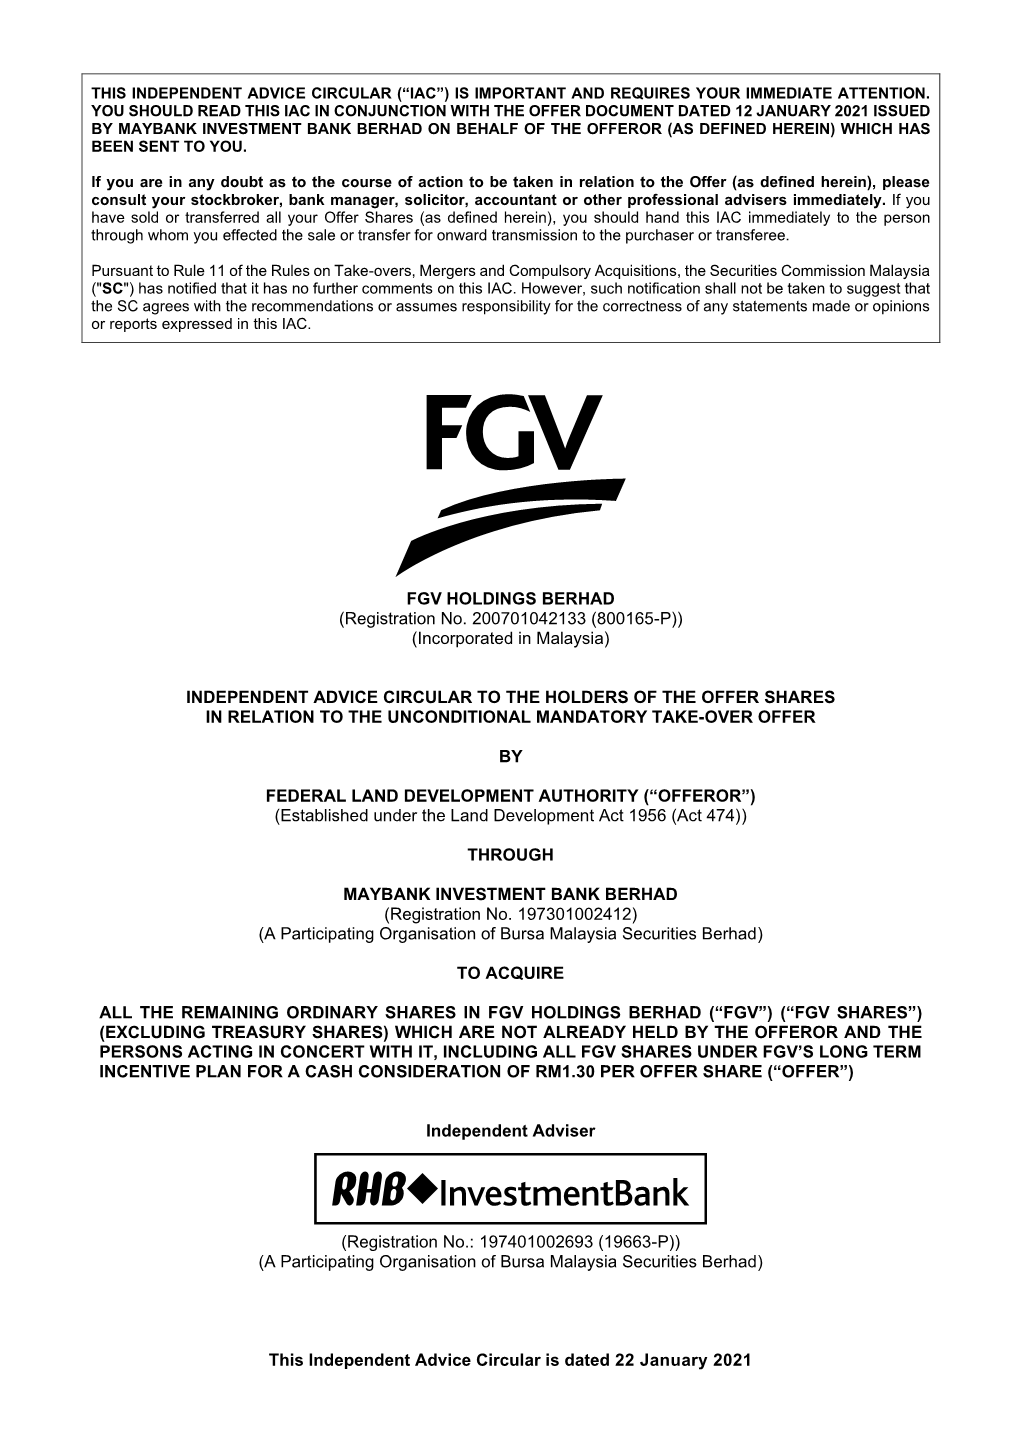 FGV HOLDINGS BERHAD (Registration No. 200701042133 (800165-P)) FGV(Incorporated HOLDINGS in Malaysia) BERHAD (Registrationfgv No